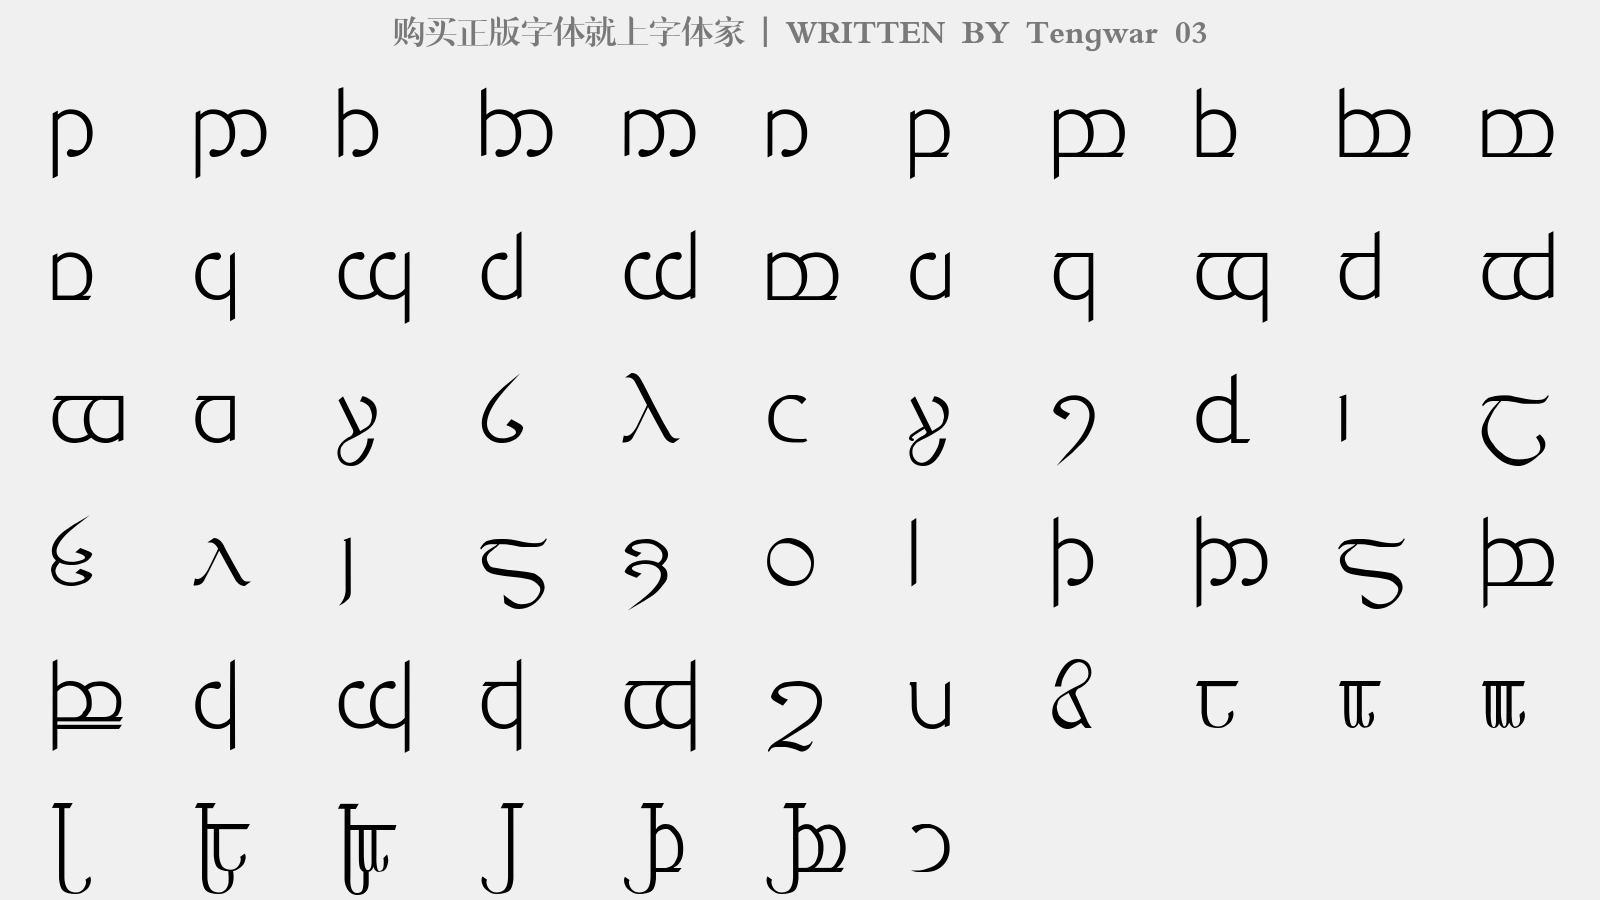 Tengwar 03 - 大写字母/小写字母/数字